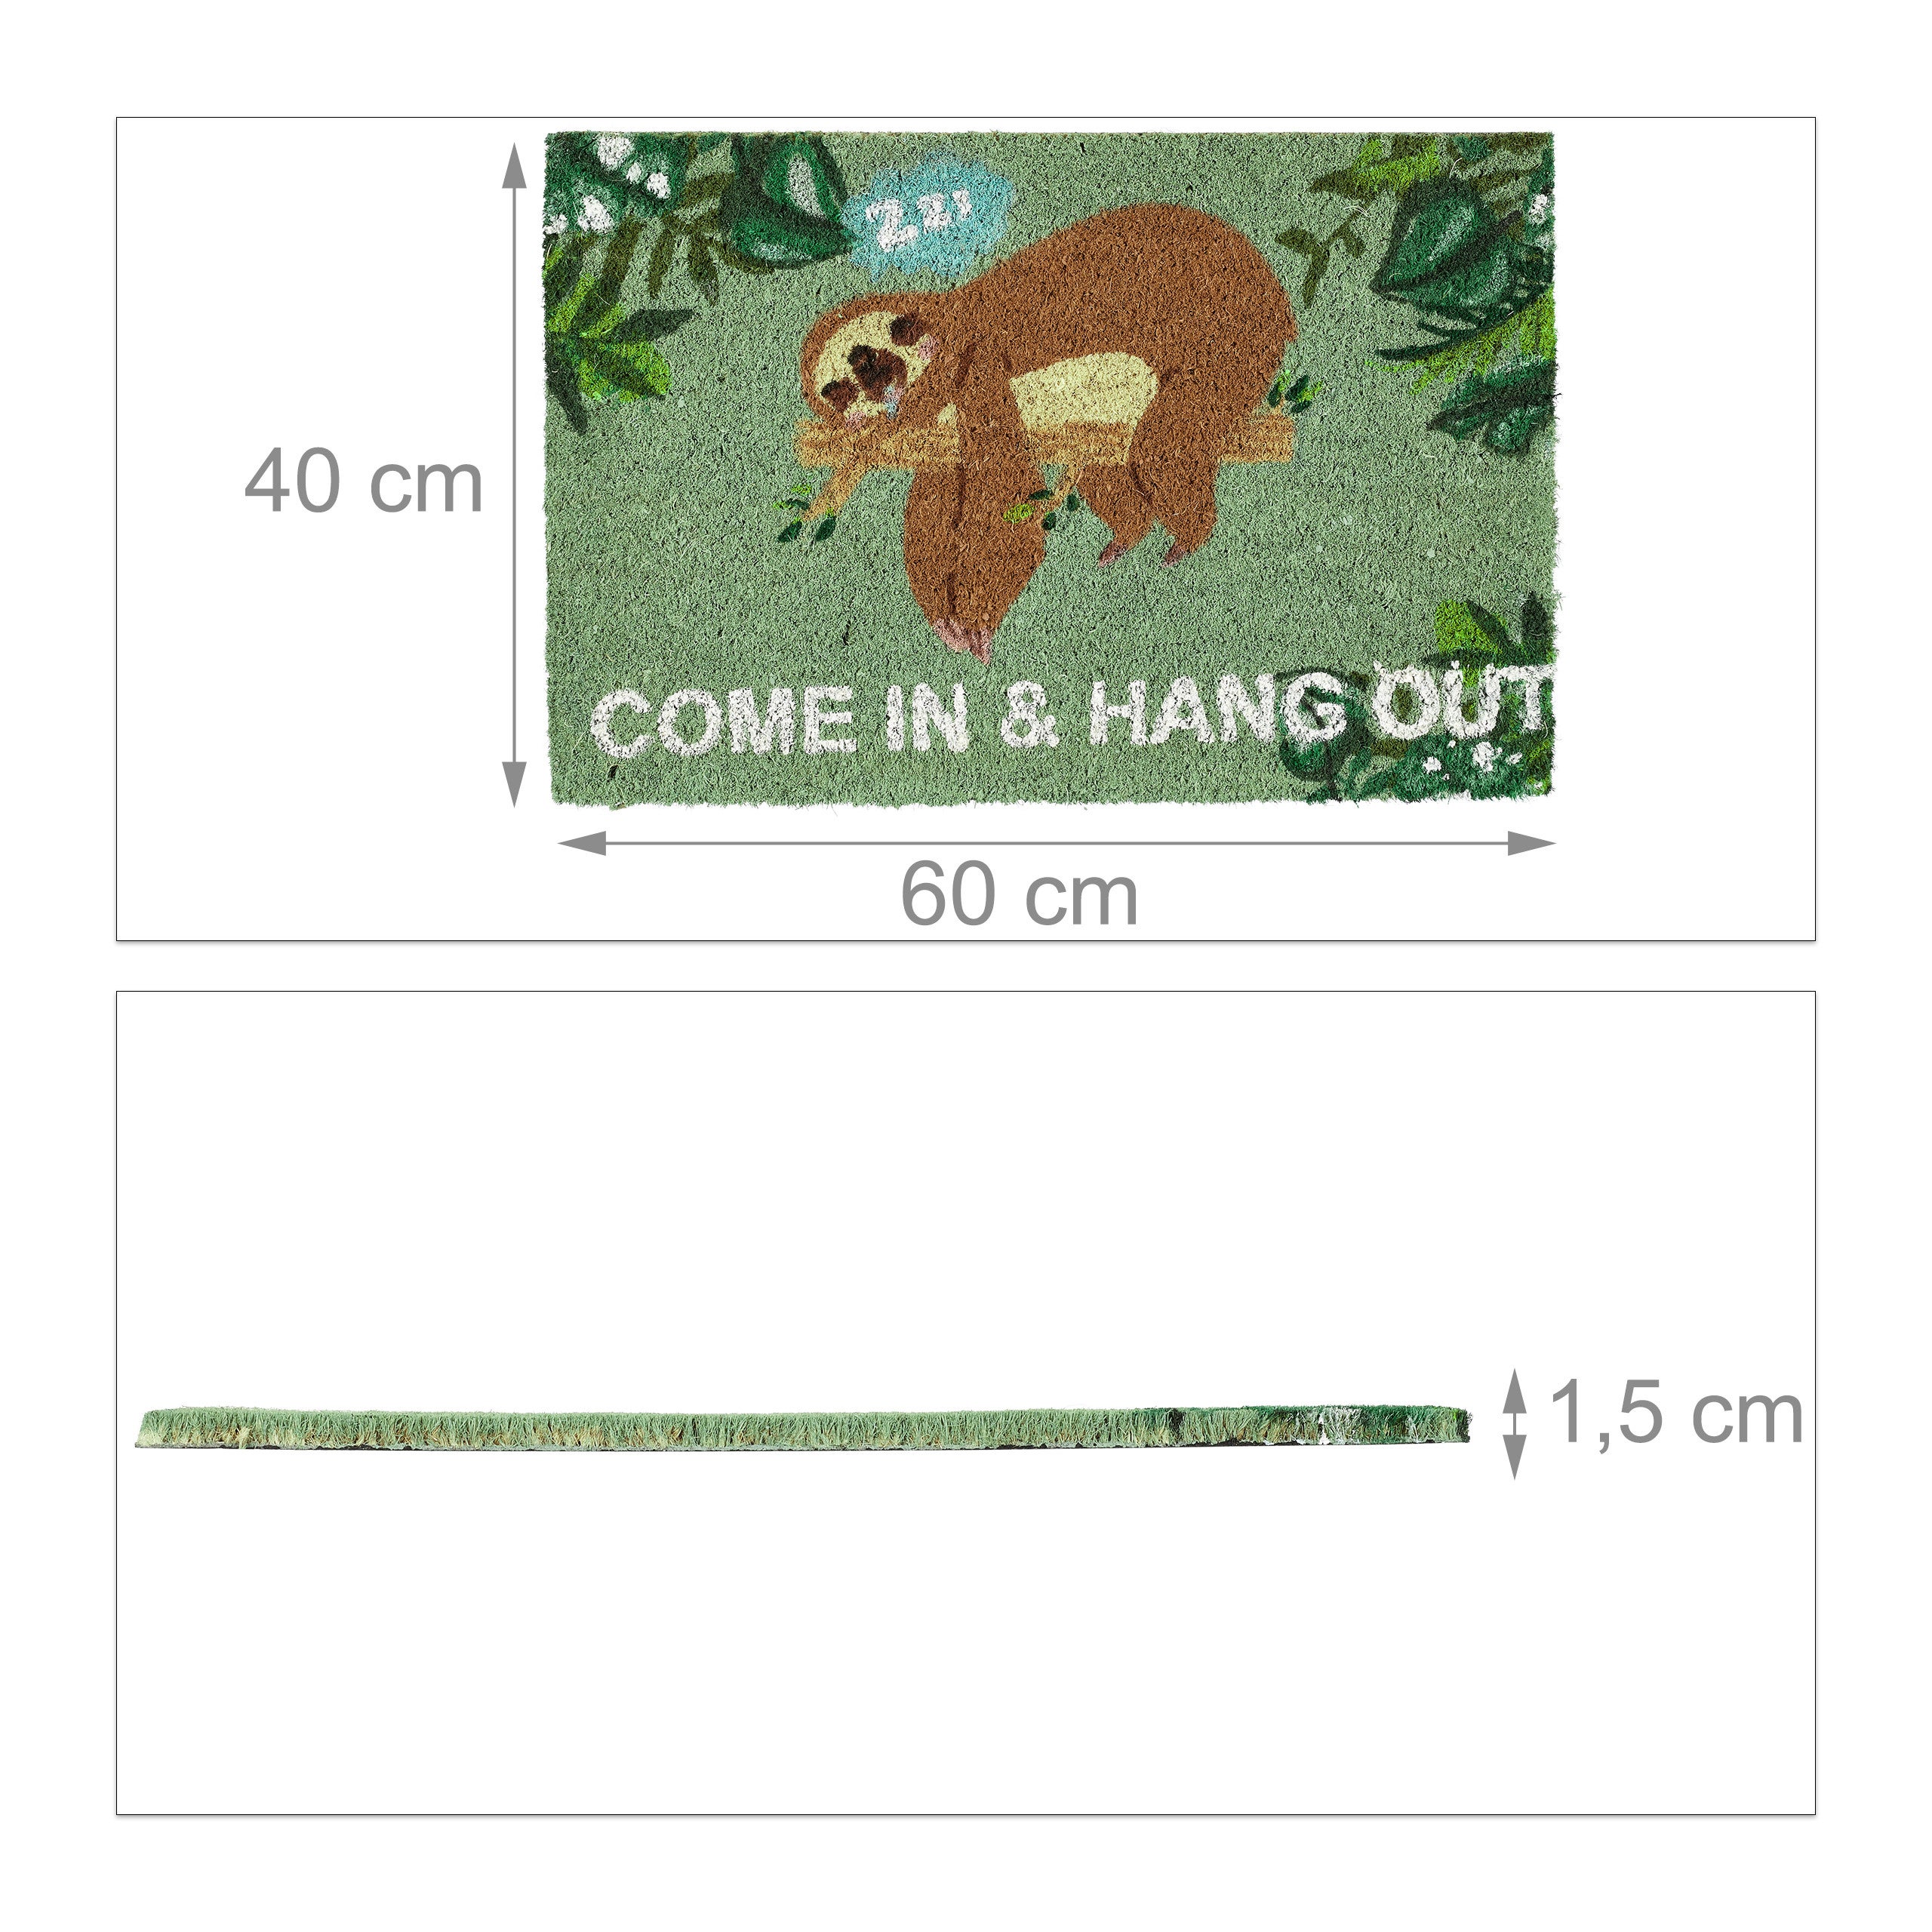 Verde/Marrone “Come in & Hang out” in Cocco Fibre Disegno di Un Bradipo Tappeto Indoor & Outdoor 60x40 PVC Relaxdays Zerbino 1 pz 